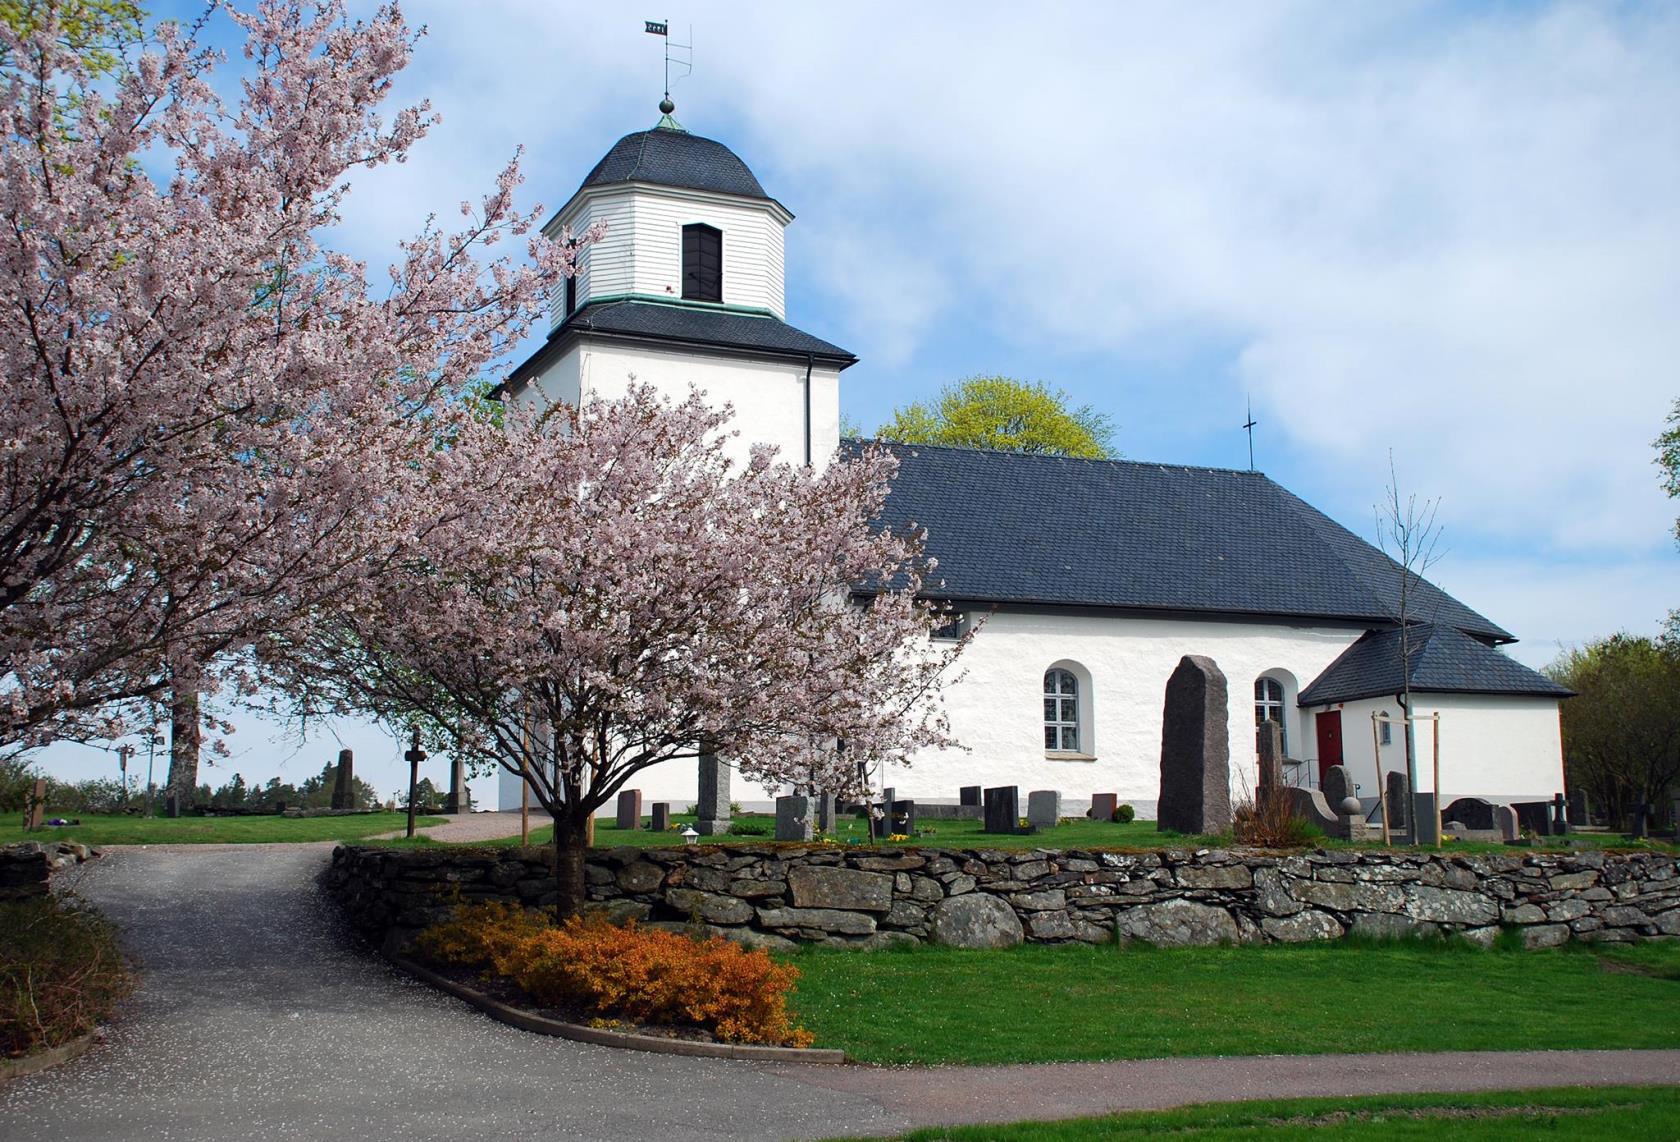 Östad kyrka med blommande körsbärsträd i förgrunden.